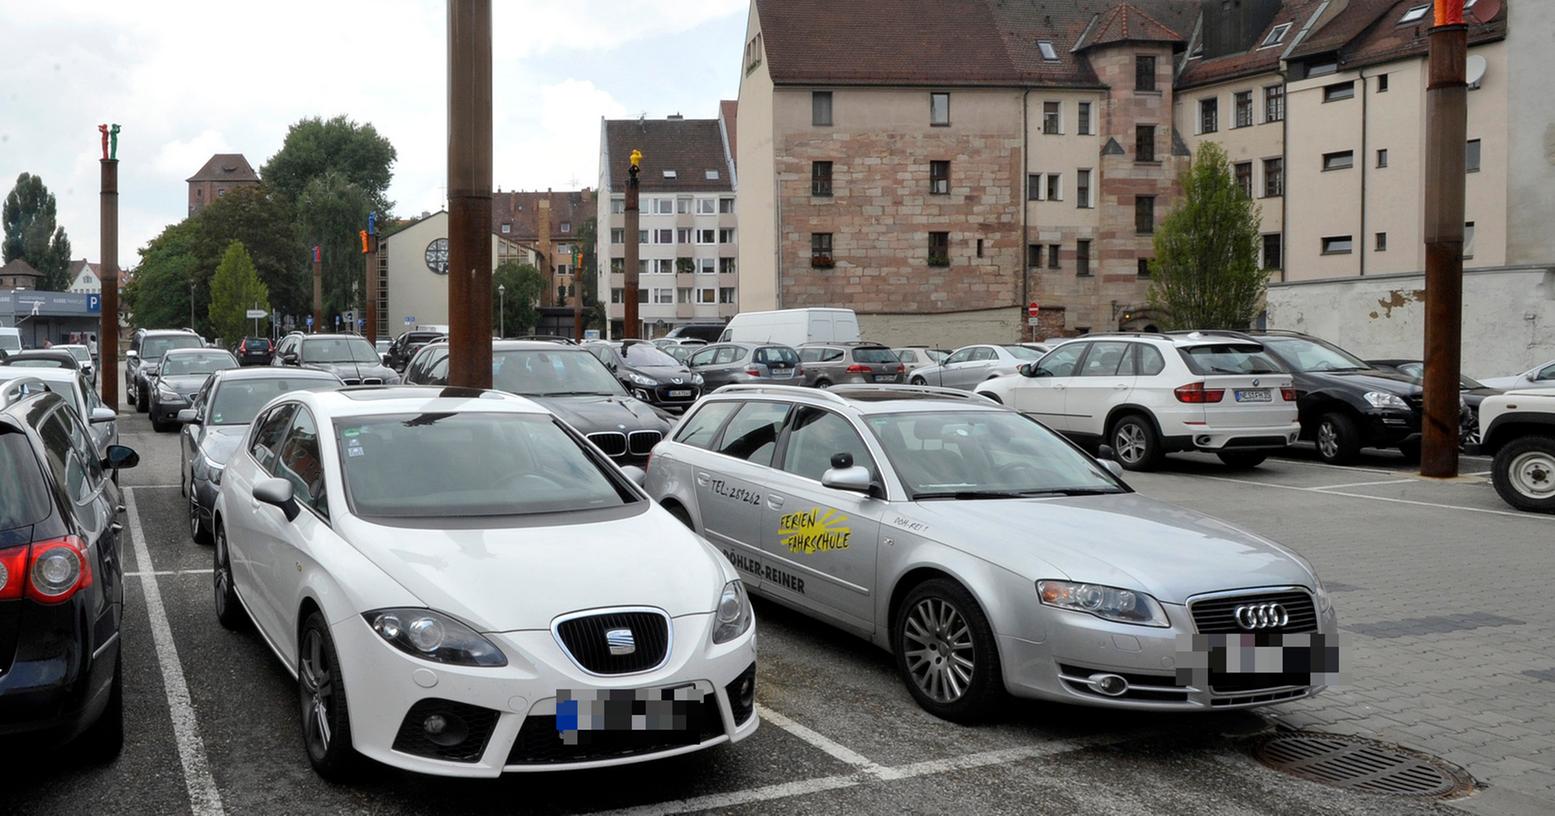 Braucht Nürnberg mehr kostenpflichtige Parkplätze? (Symbolbild)